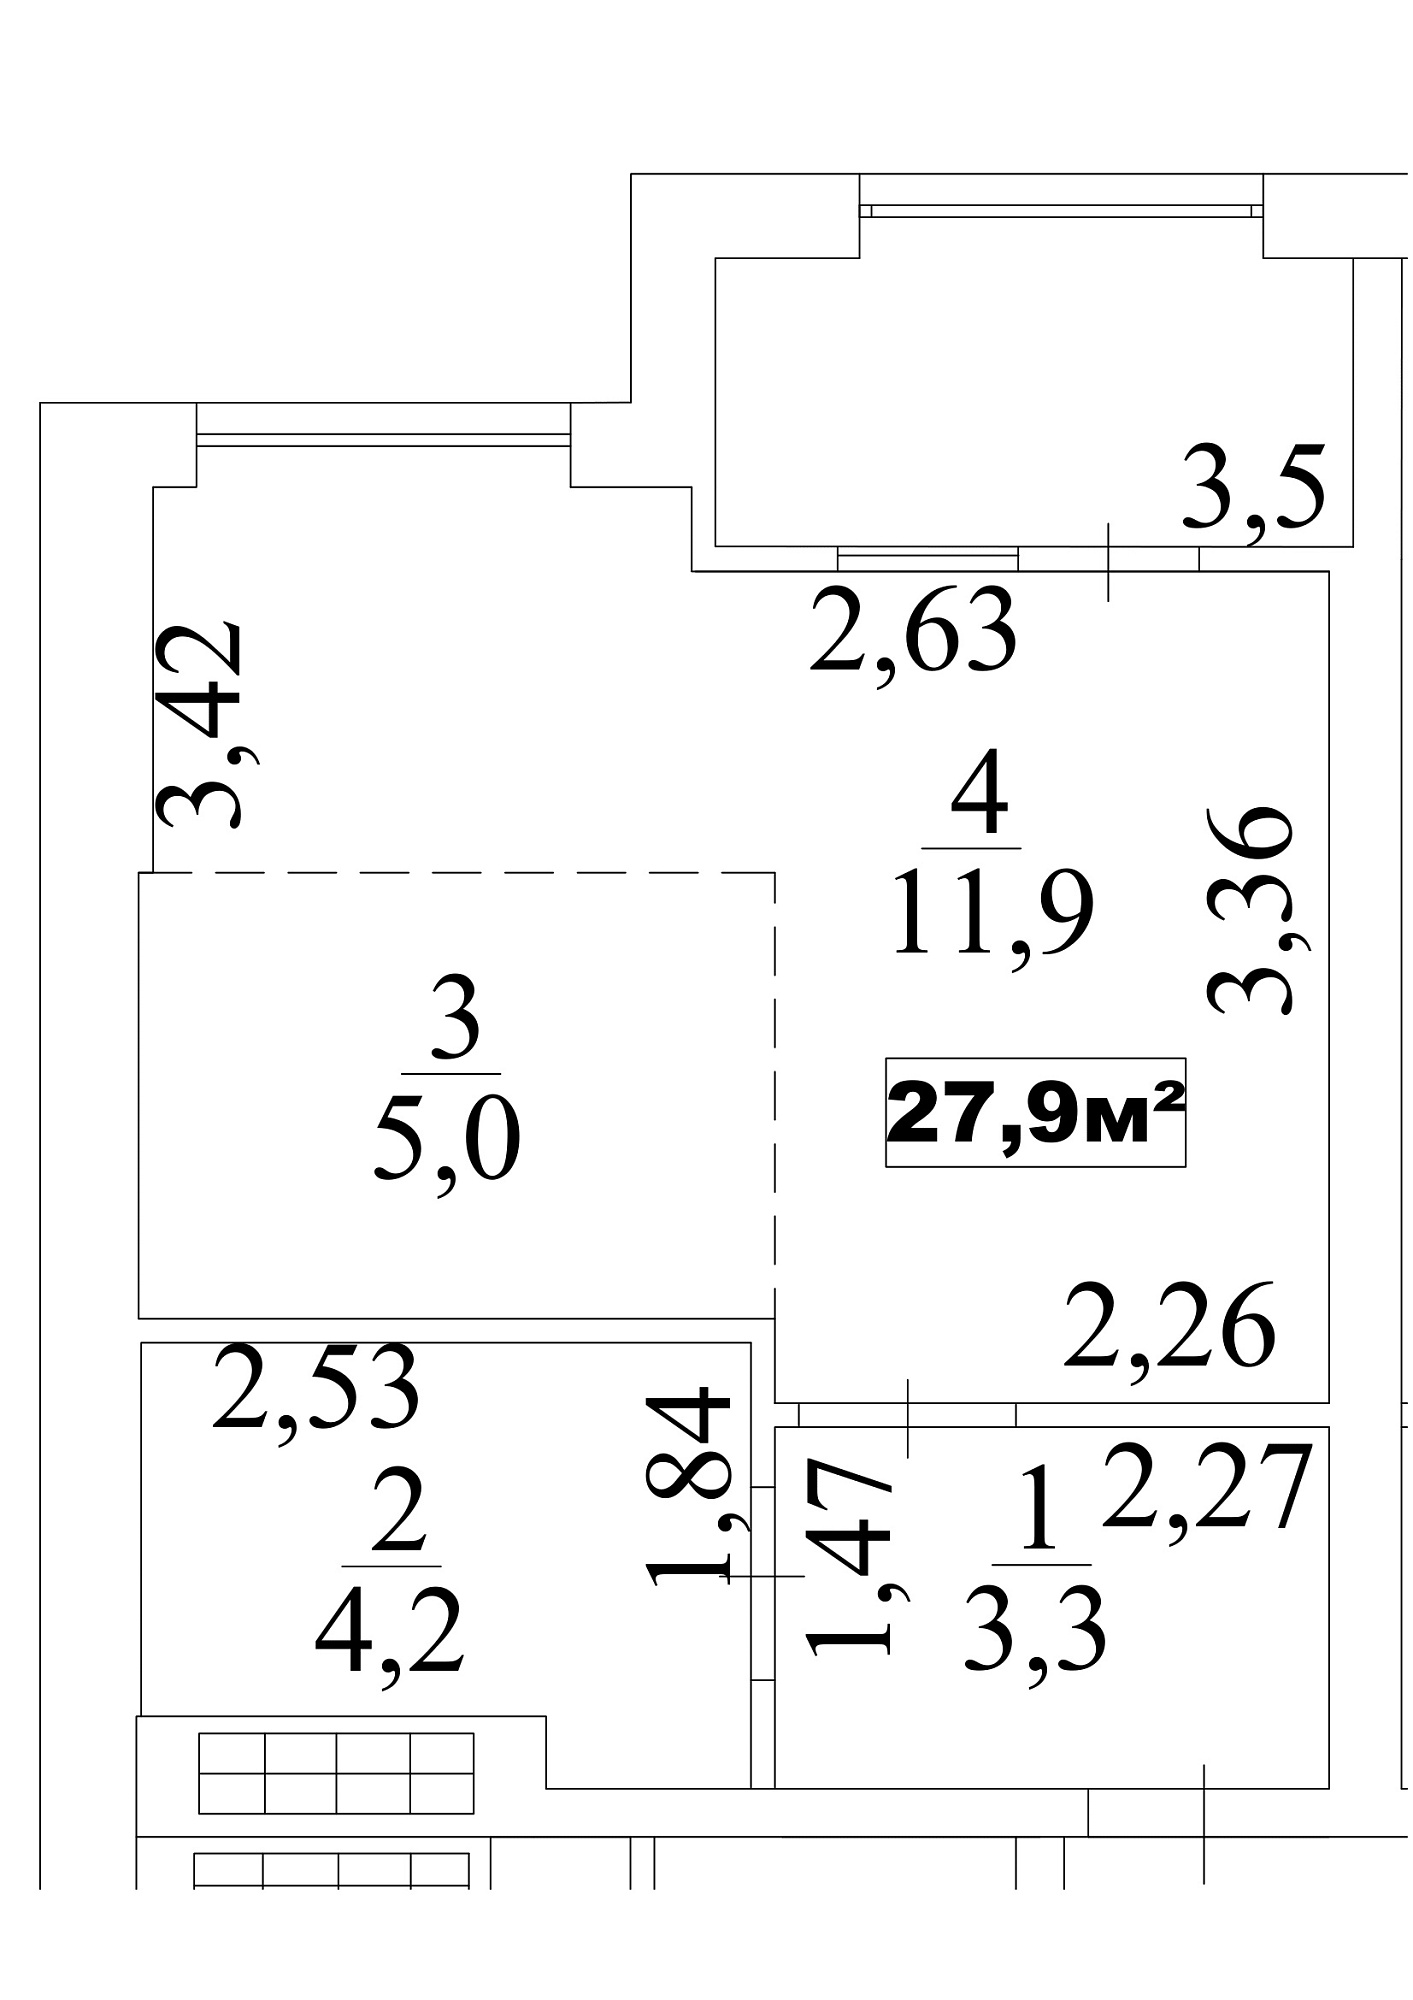 Планування Smart-квартира площею 27.9м2, AB-10-04/0030б.